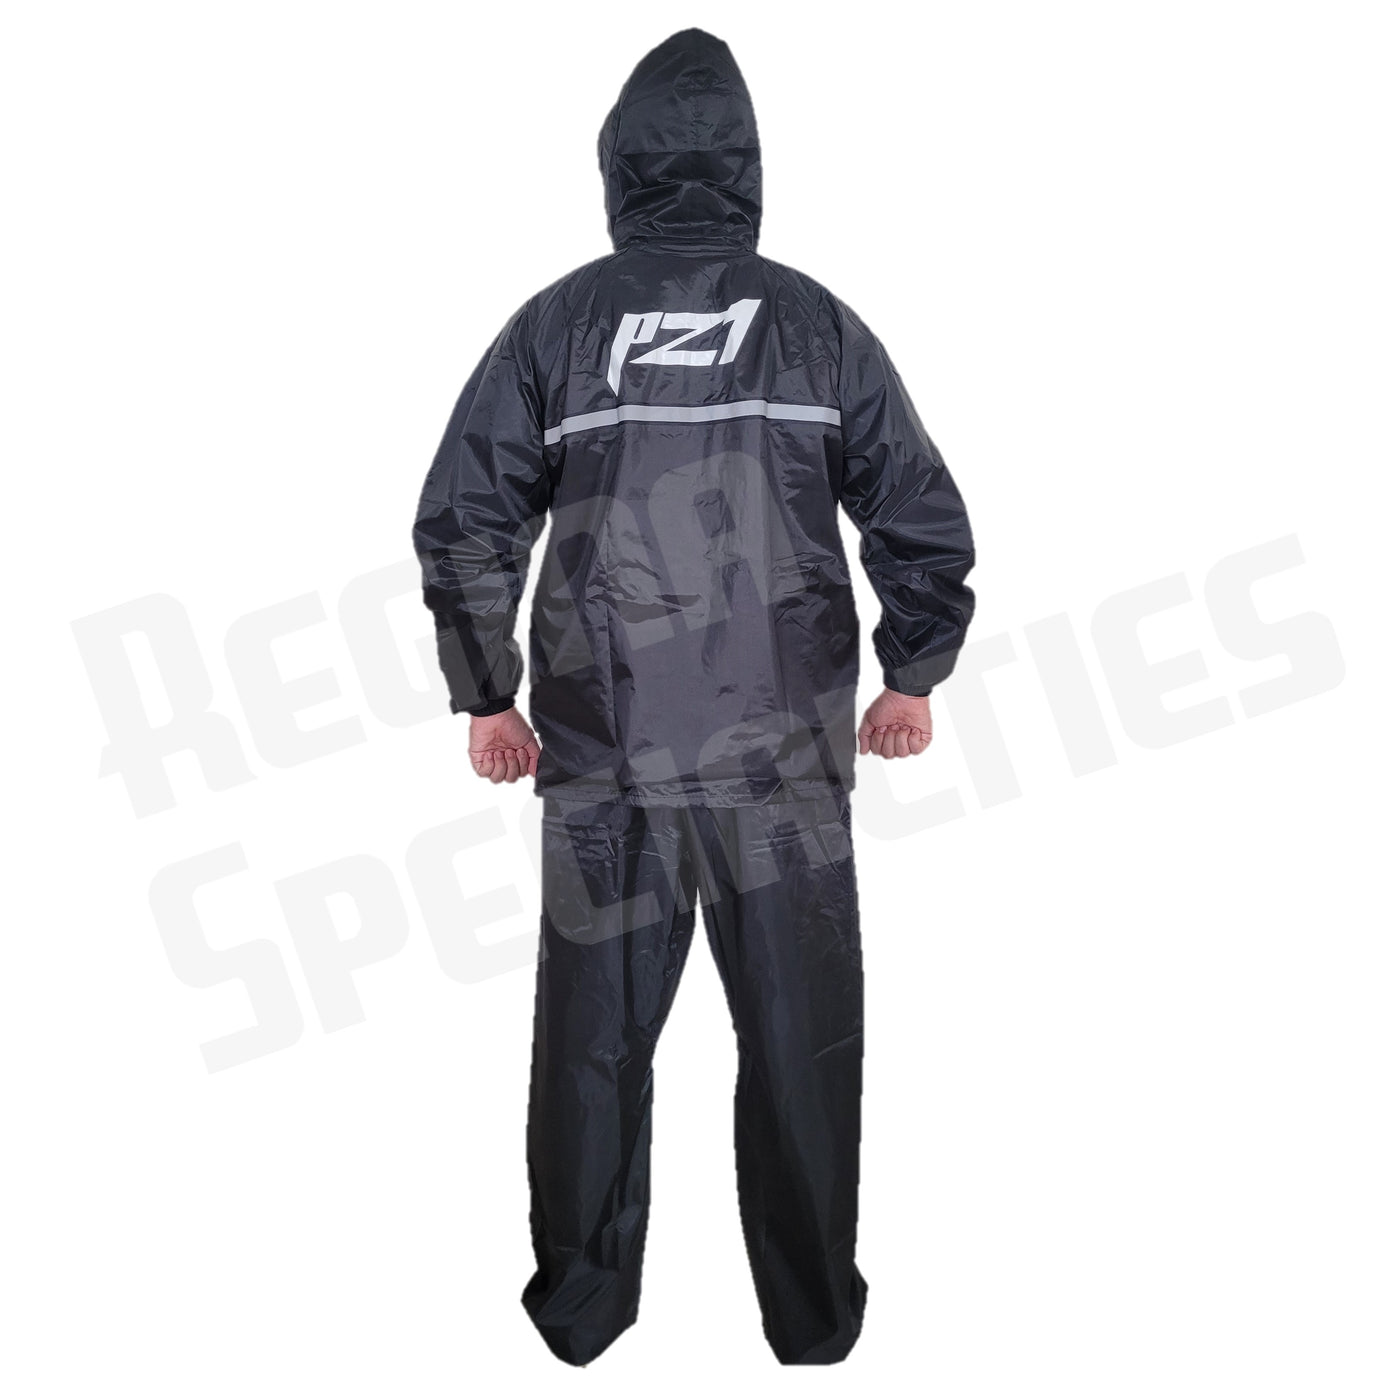 PZ1 Raincoat